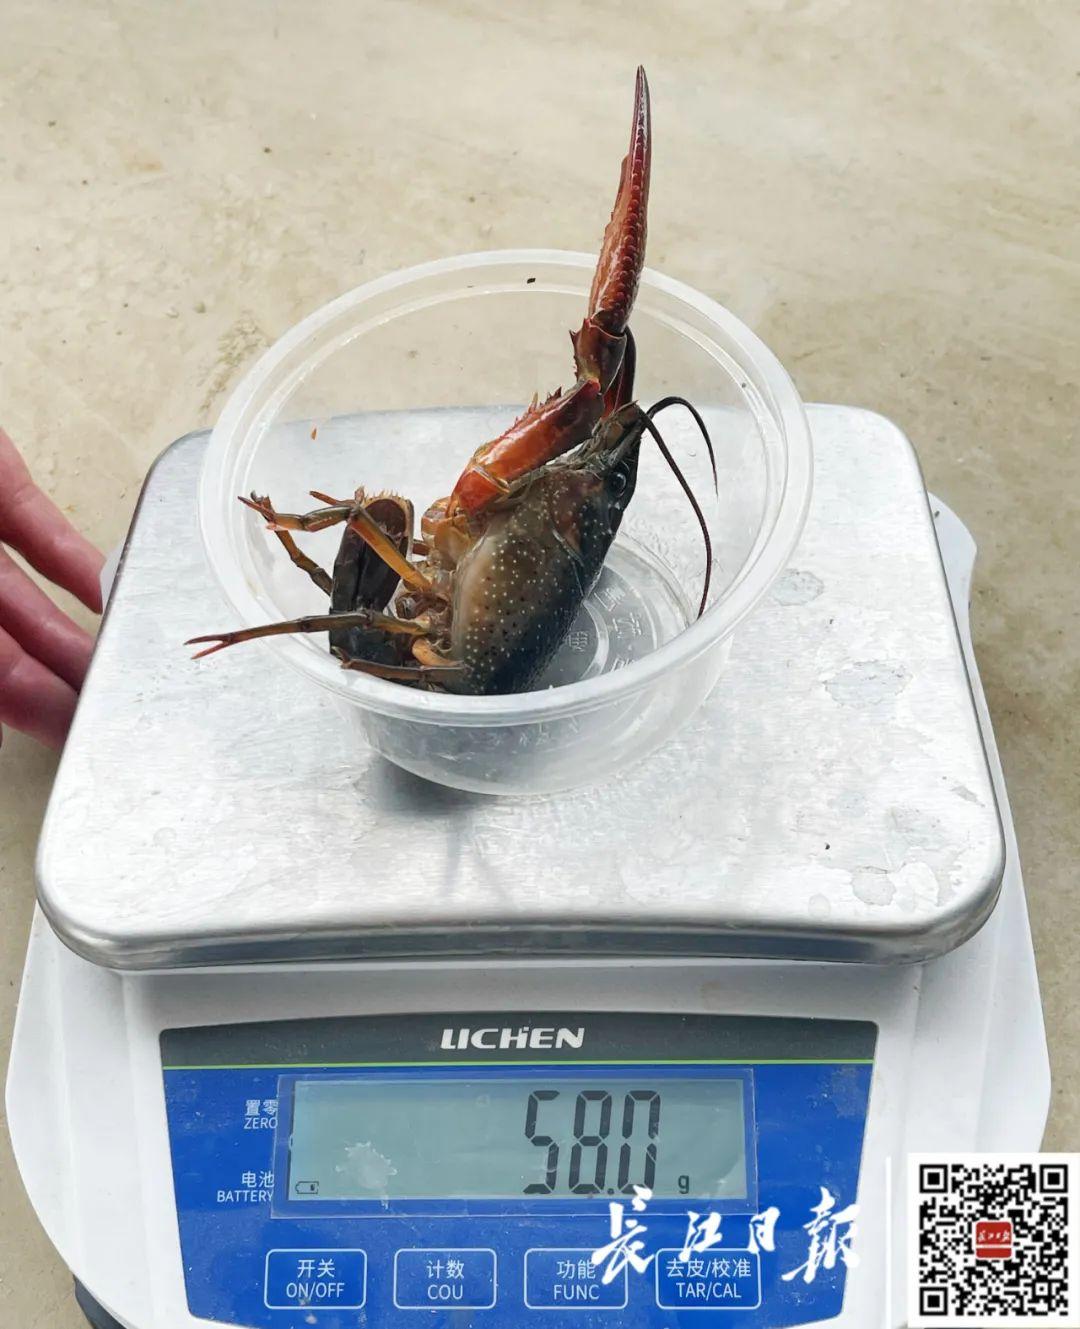 一只小龙虾重量可达58克